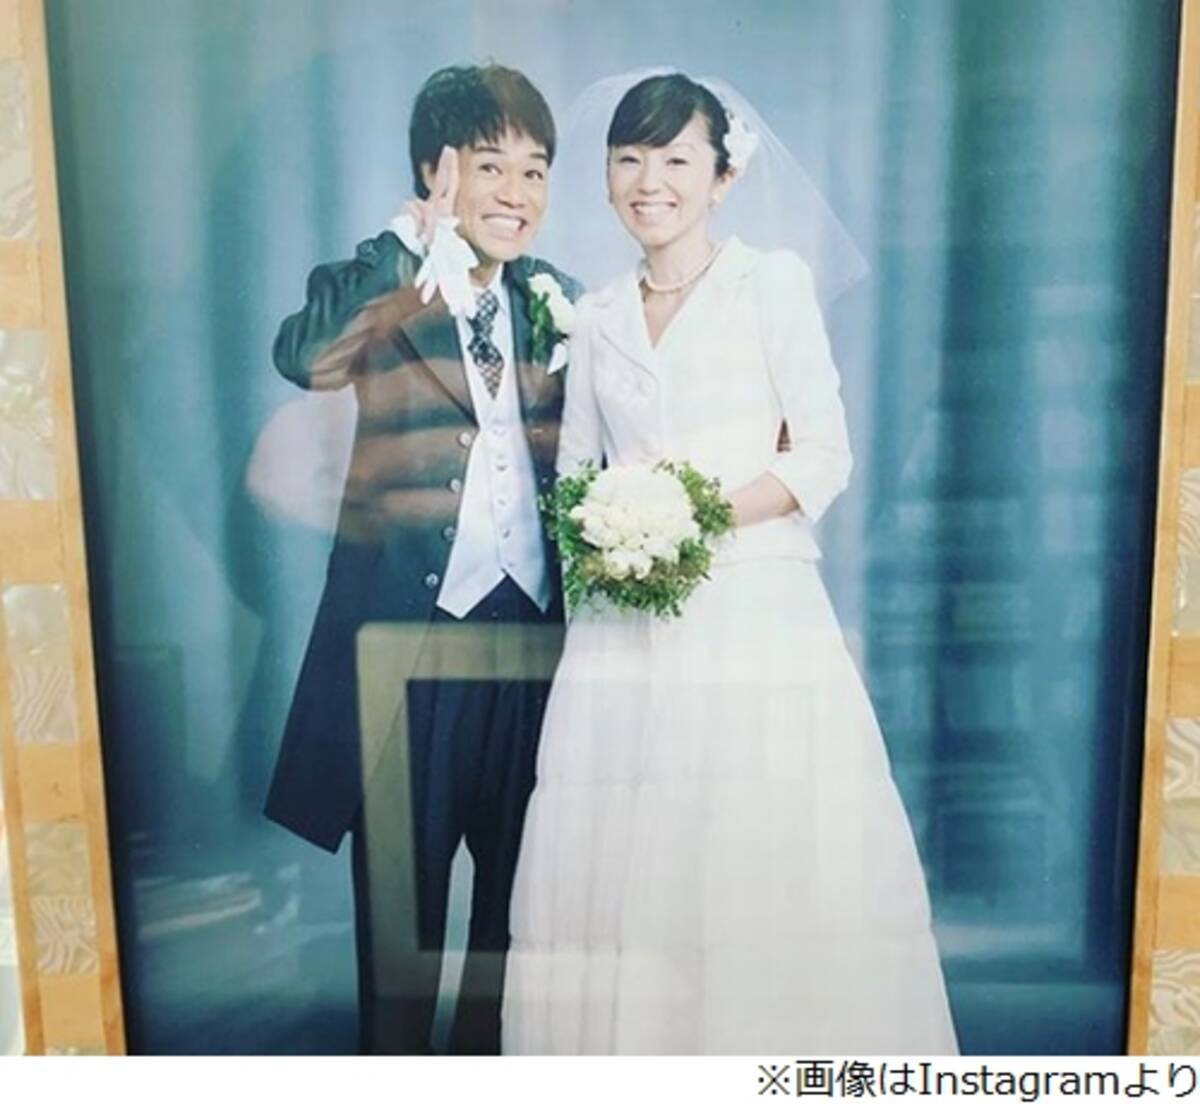 名倉潤 渡辺満里奈が 結婚写真 披露 19年5月6日 エキサイトニュース